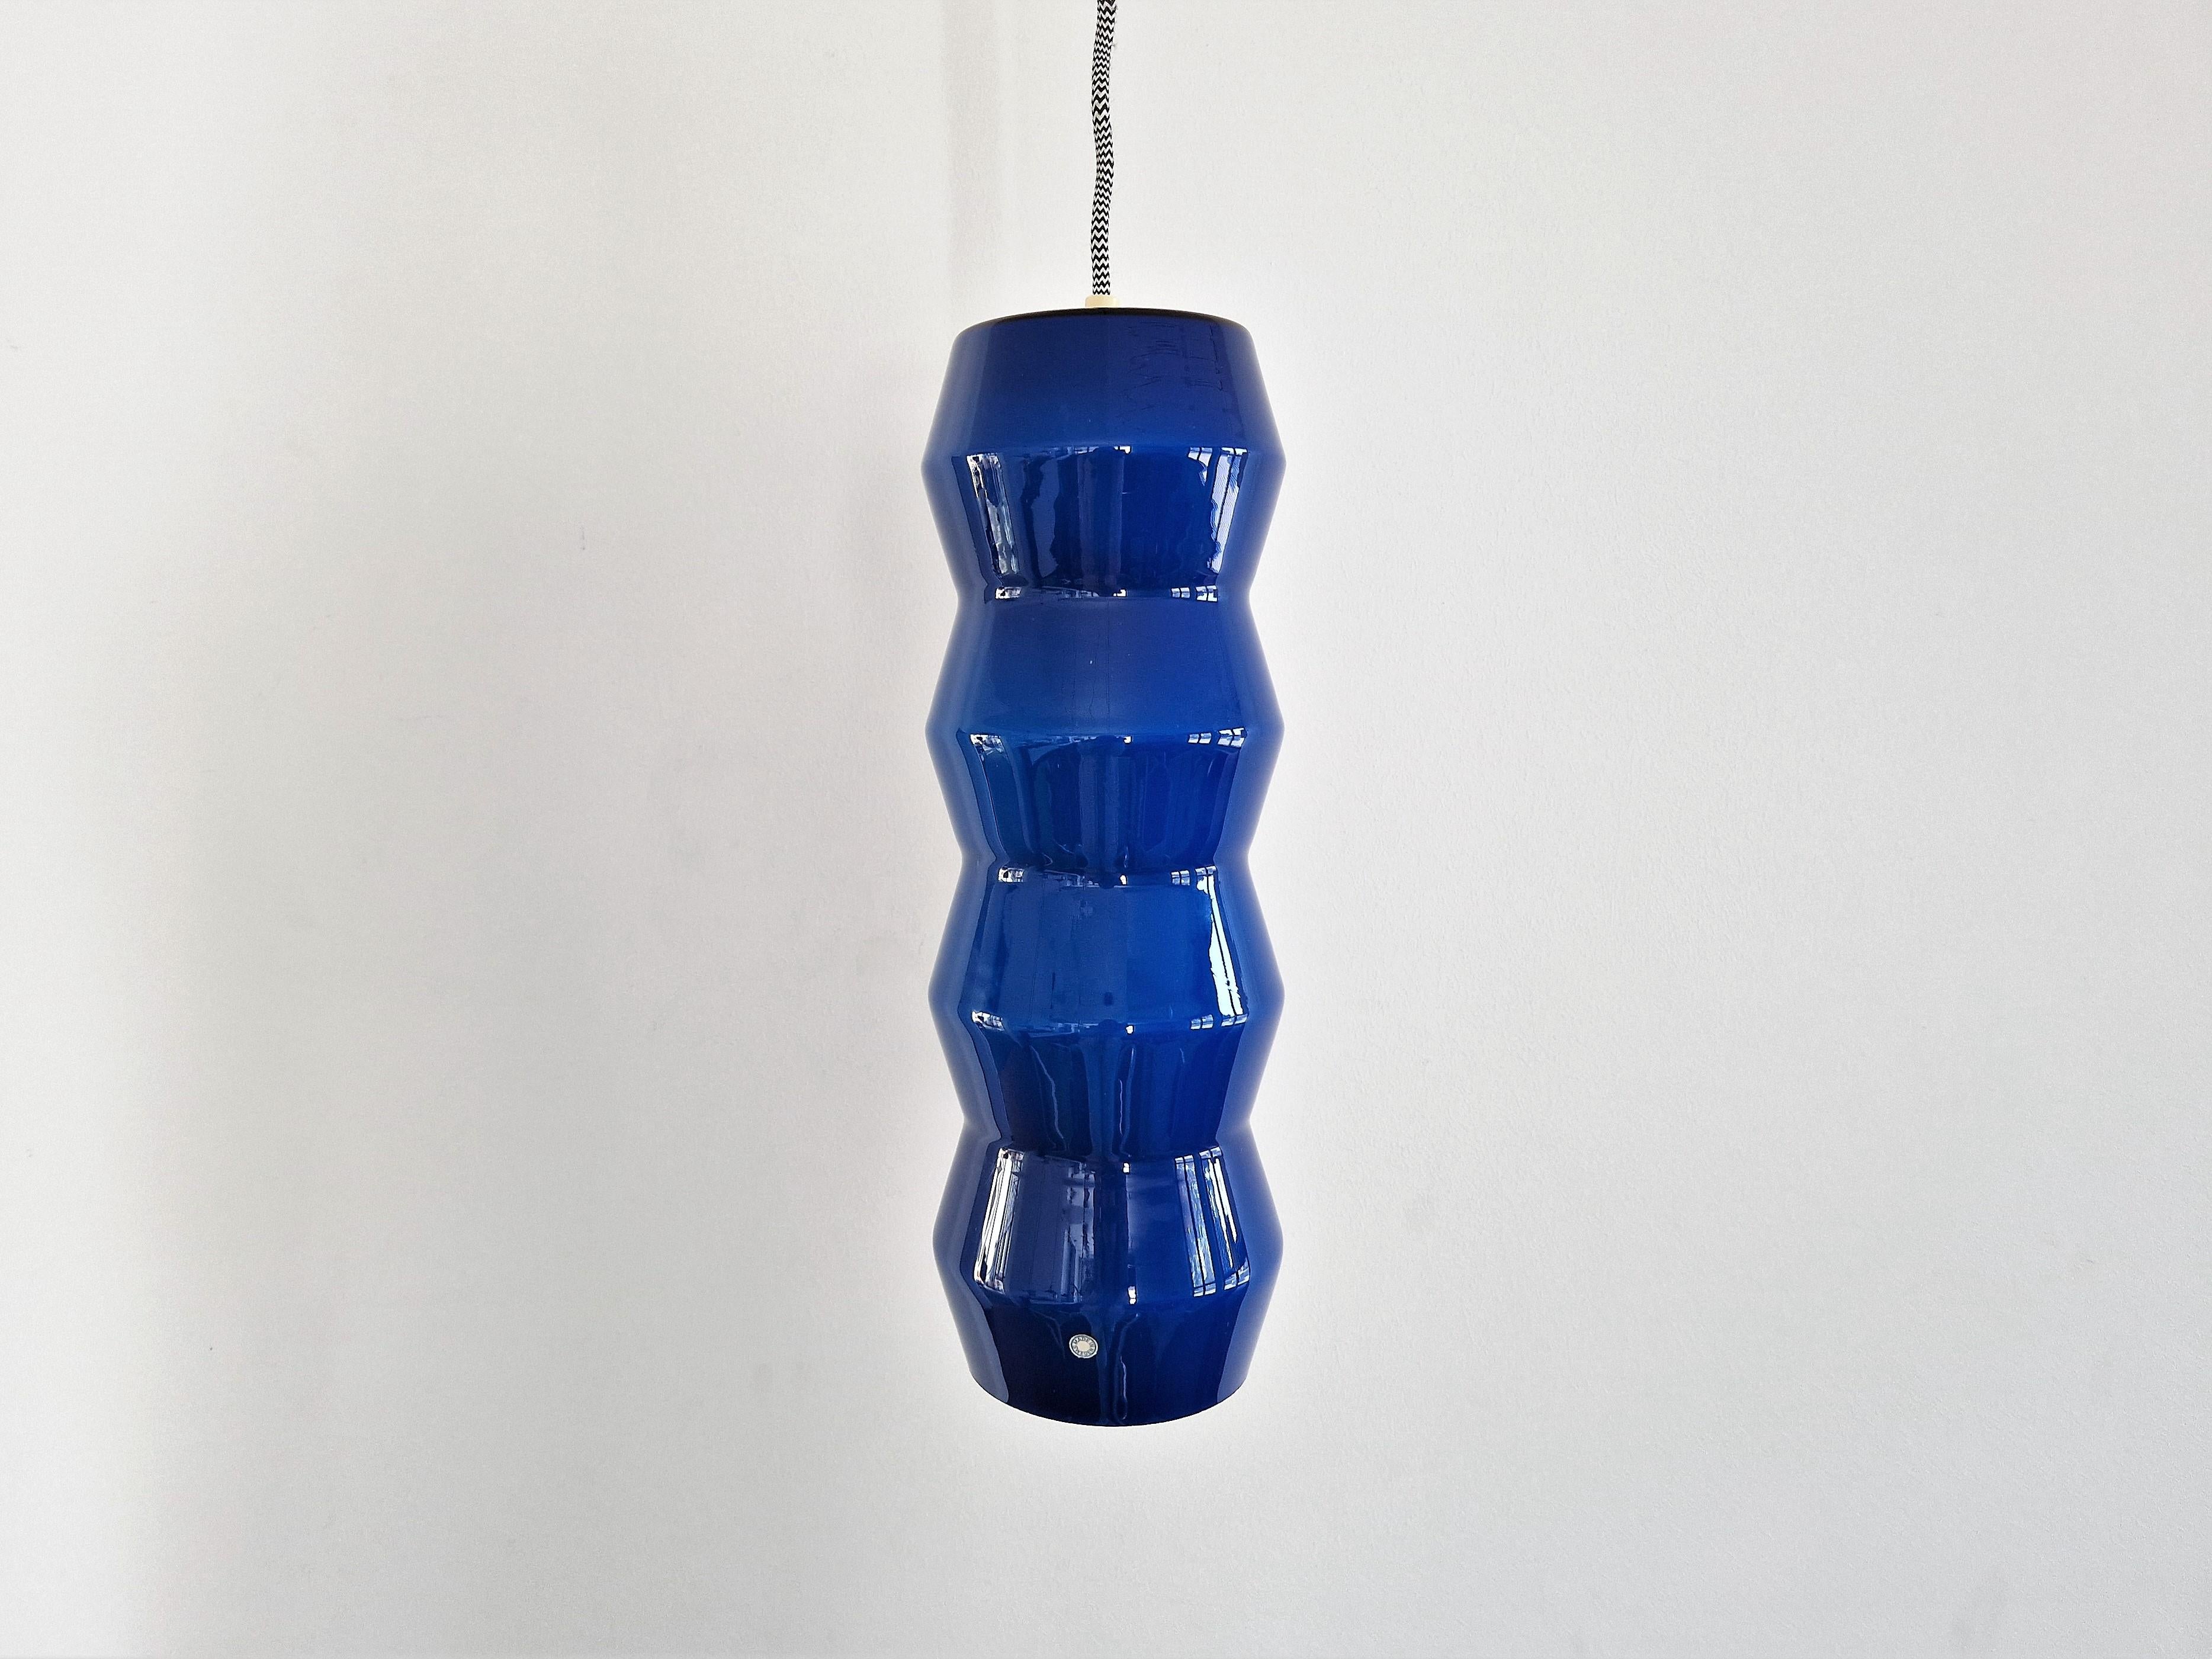 Cette étonnante lampe suspendue en verre façonné est documentée dans un catalogue de la société 'Indoor'. Il s'agissait de l'importateur et du distributeur de marques de luminaires telles que Vistosi, Venini et Arteluce aux Pays-Bas. Le catalogue de